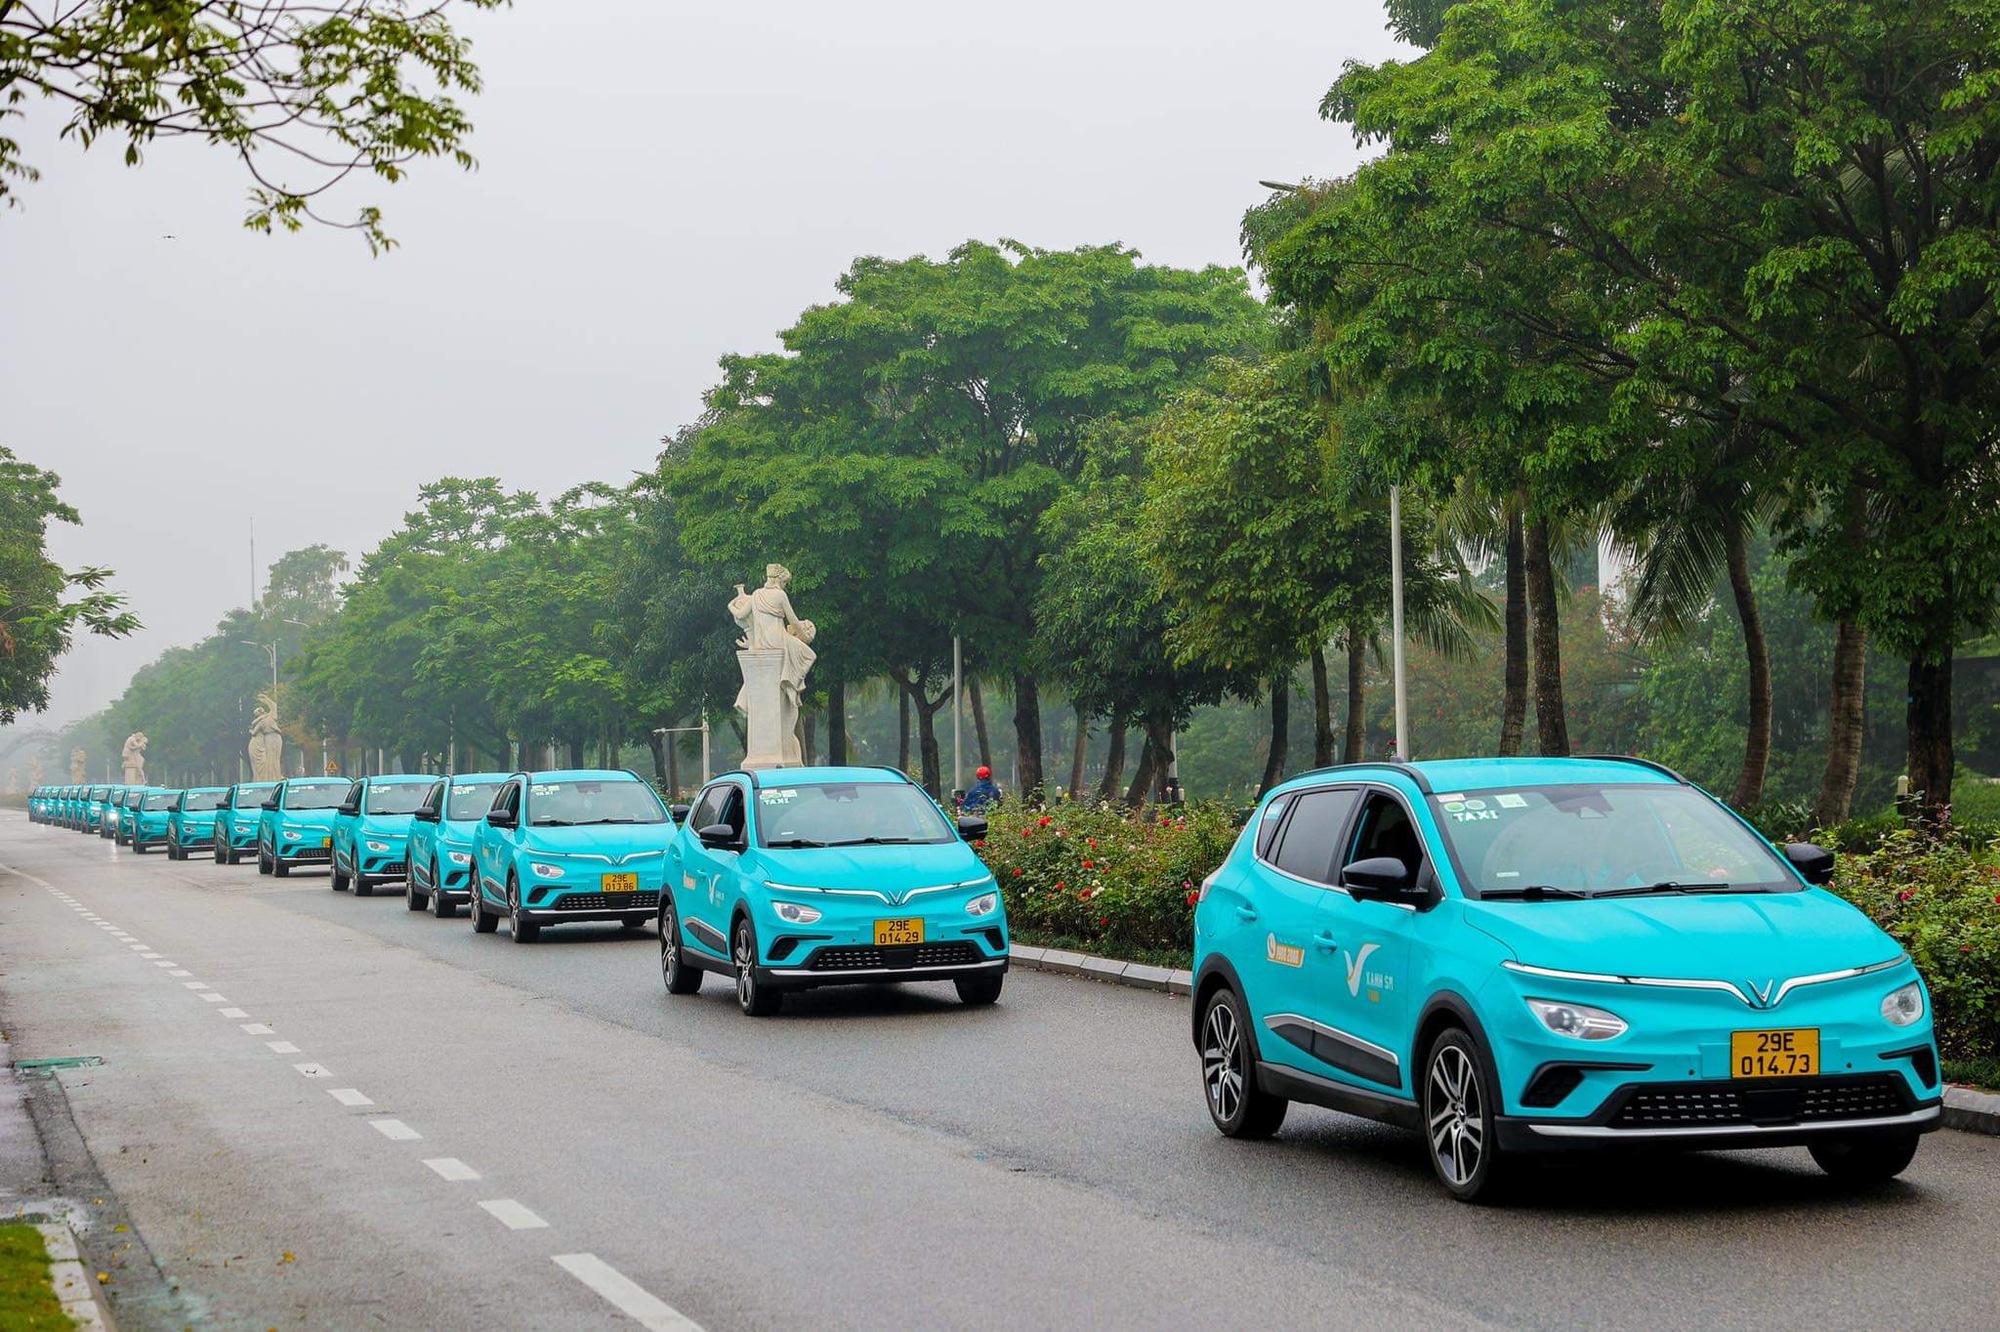 Hãng taxi điện đầu tiên chính thức lăn bánh tại Hà Nội - Ảnh 2.